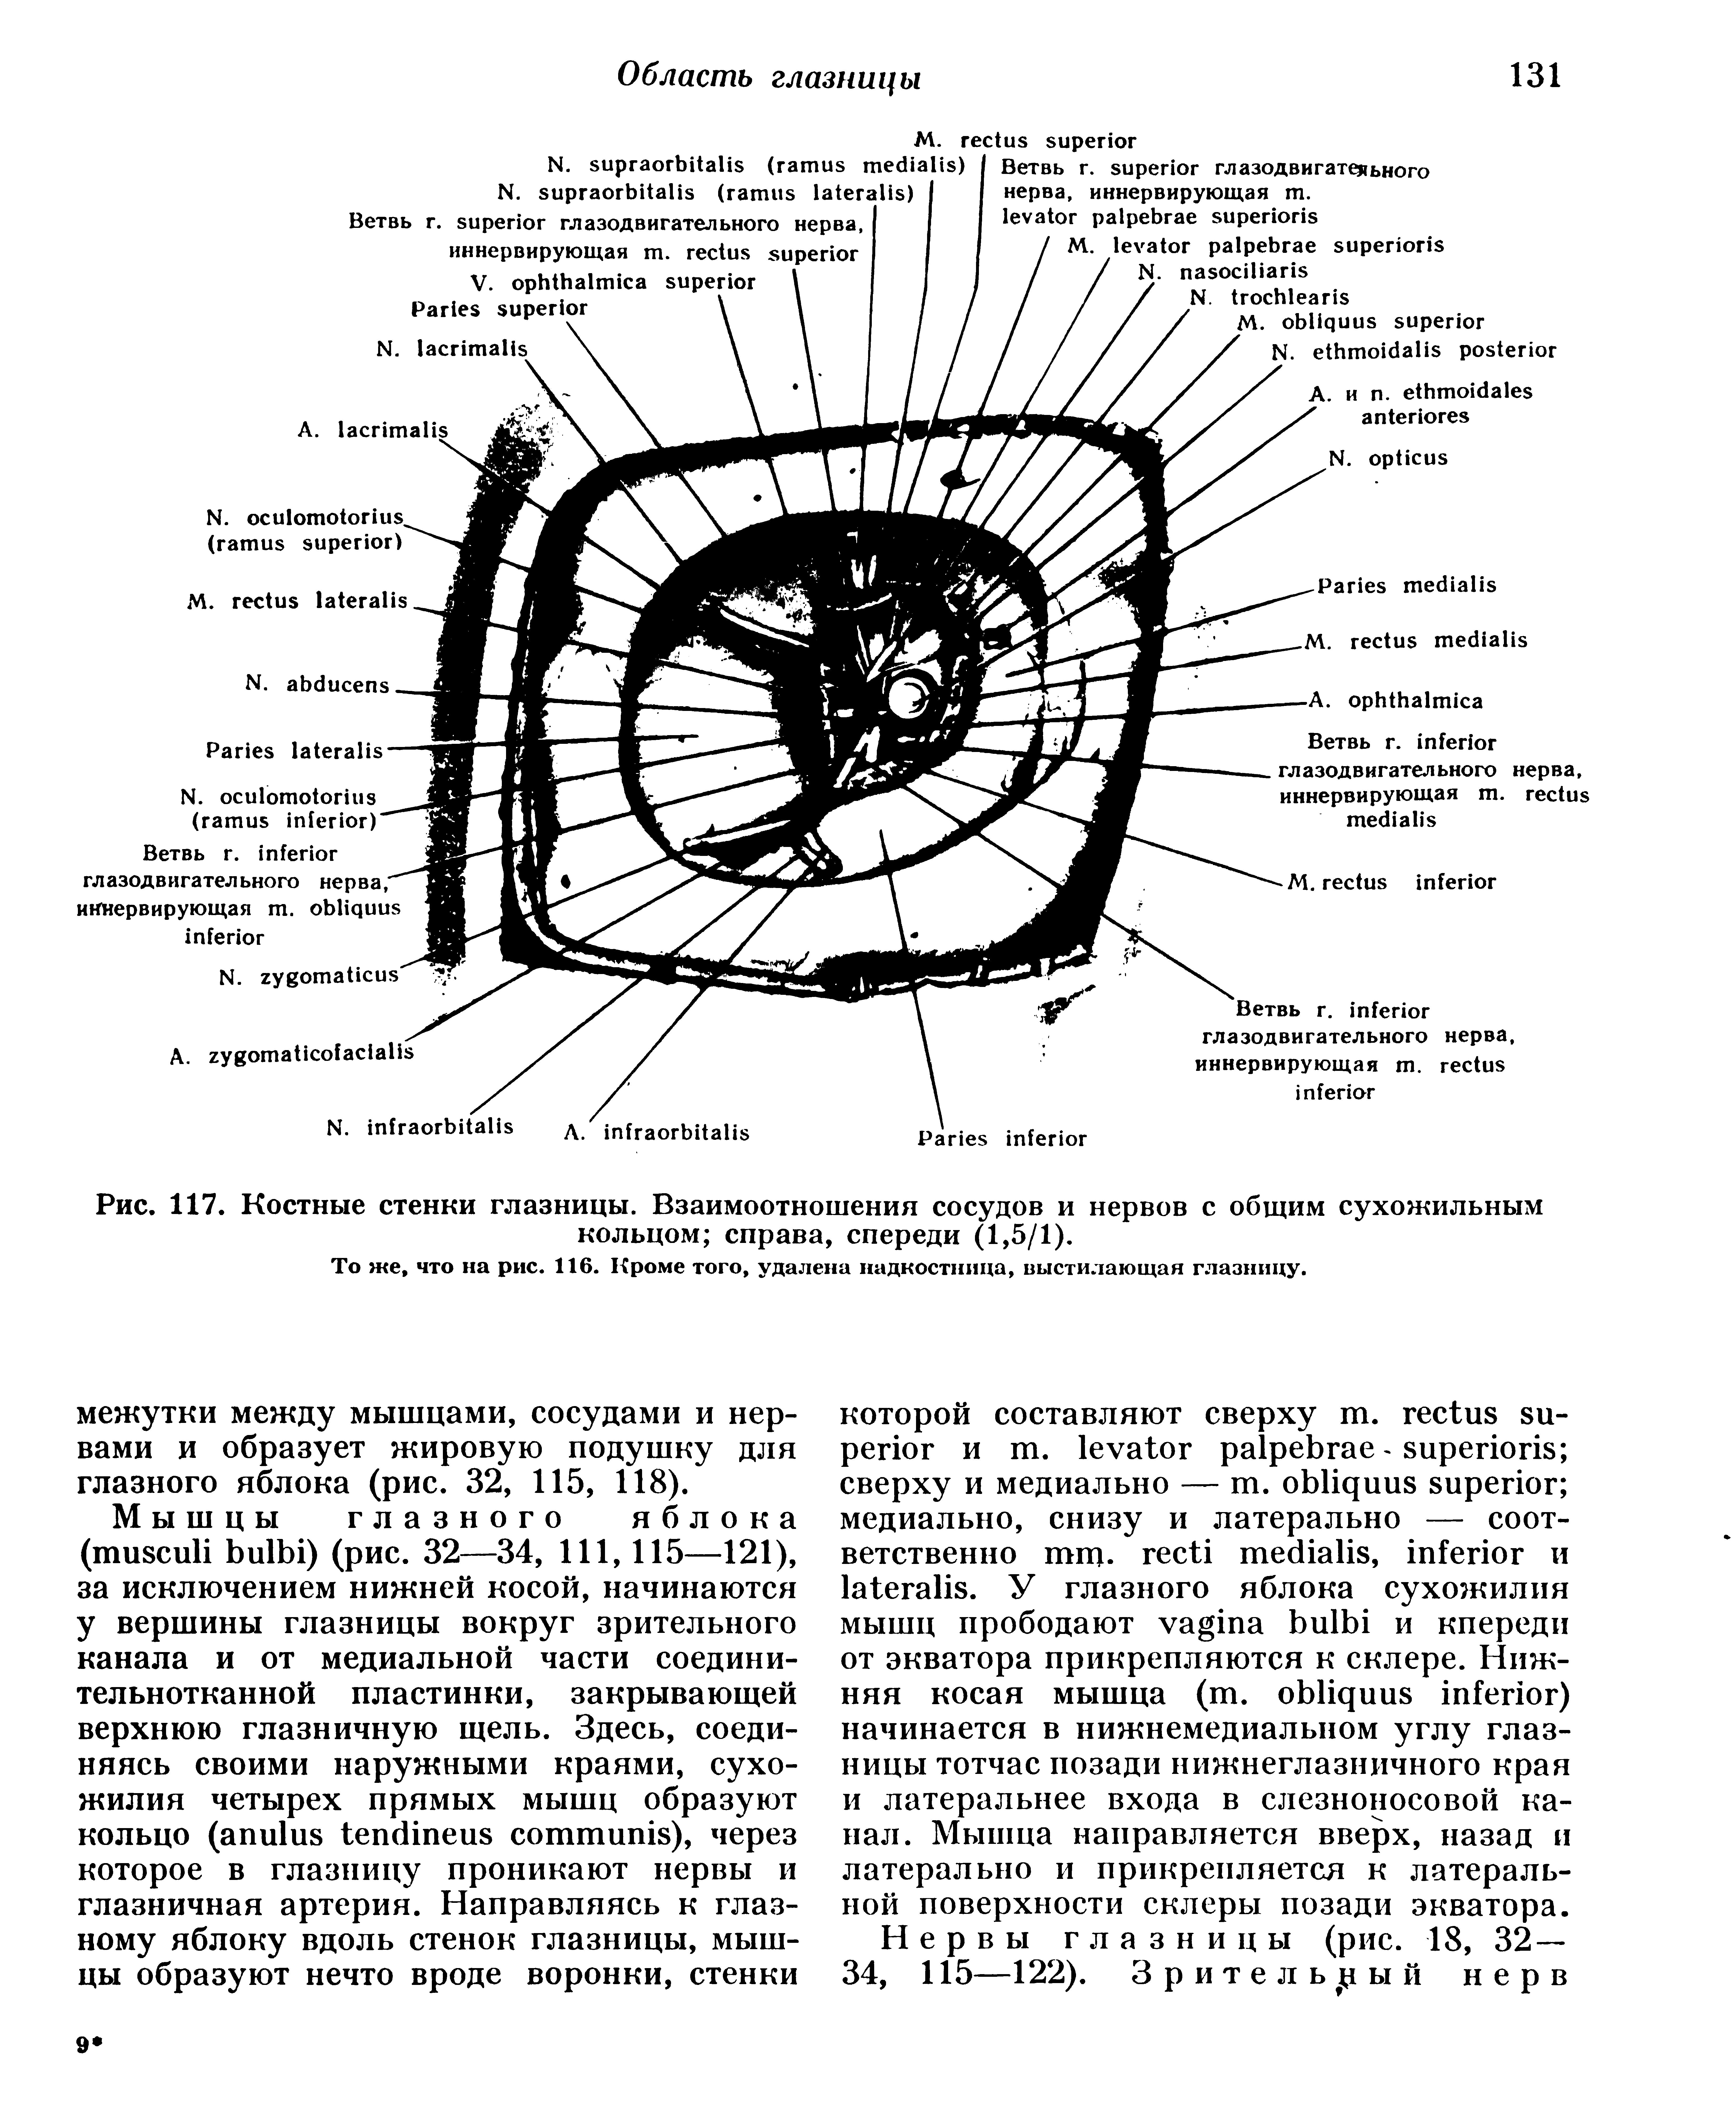 Рис. 117. Костные стенки глазницы. Взаимоотношения сосудов и нервов с общим сухожильным кольцом справа, спереди (1,5/1).